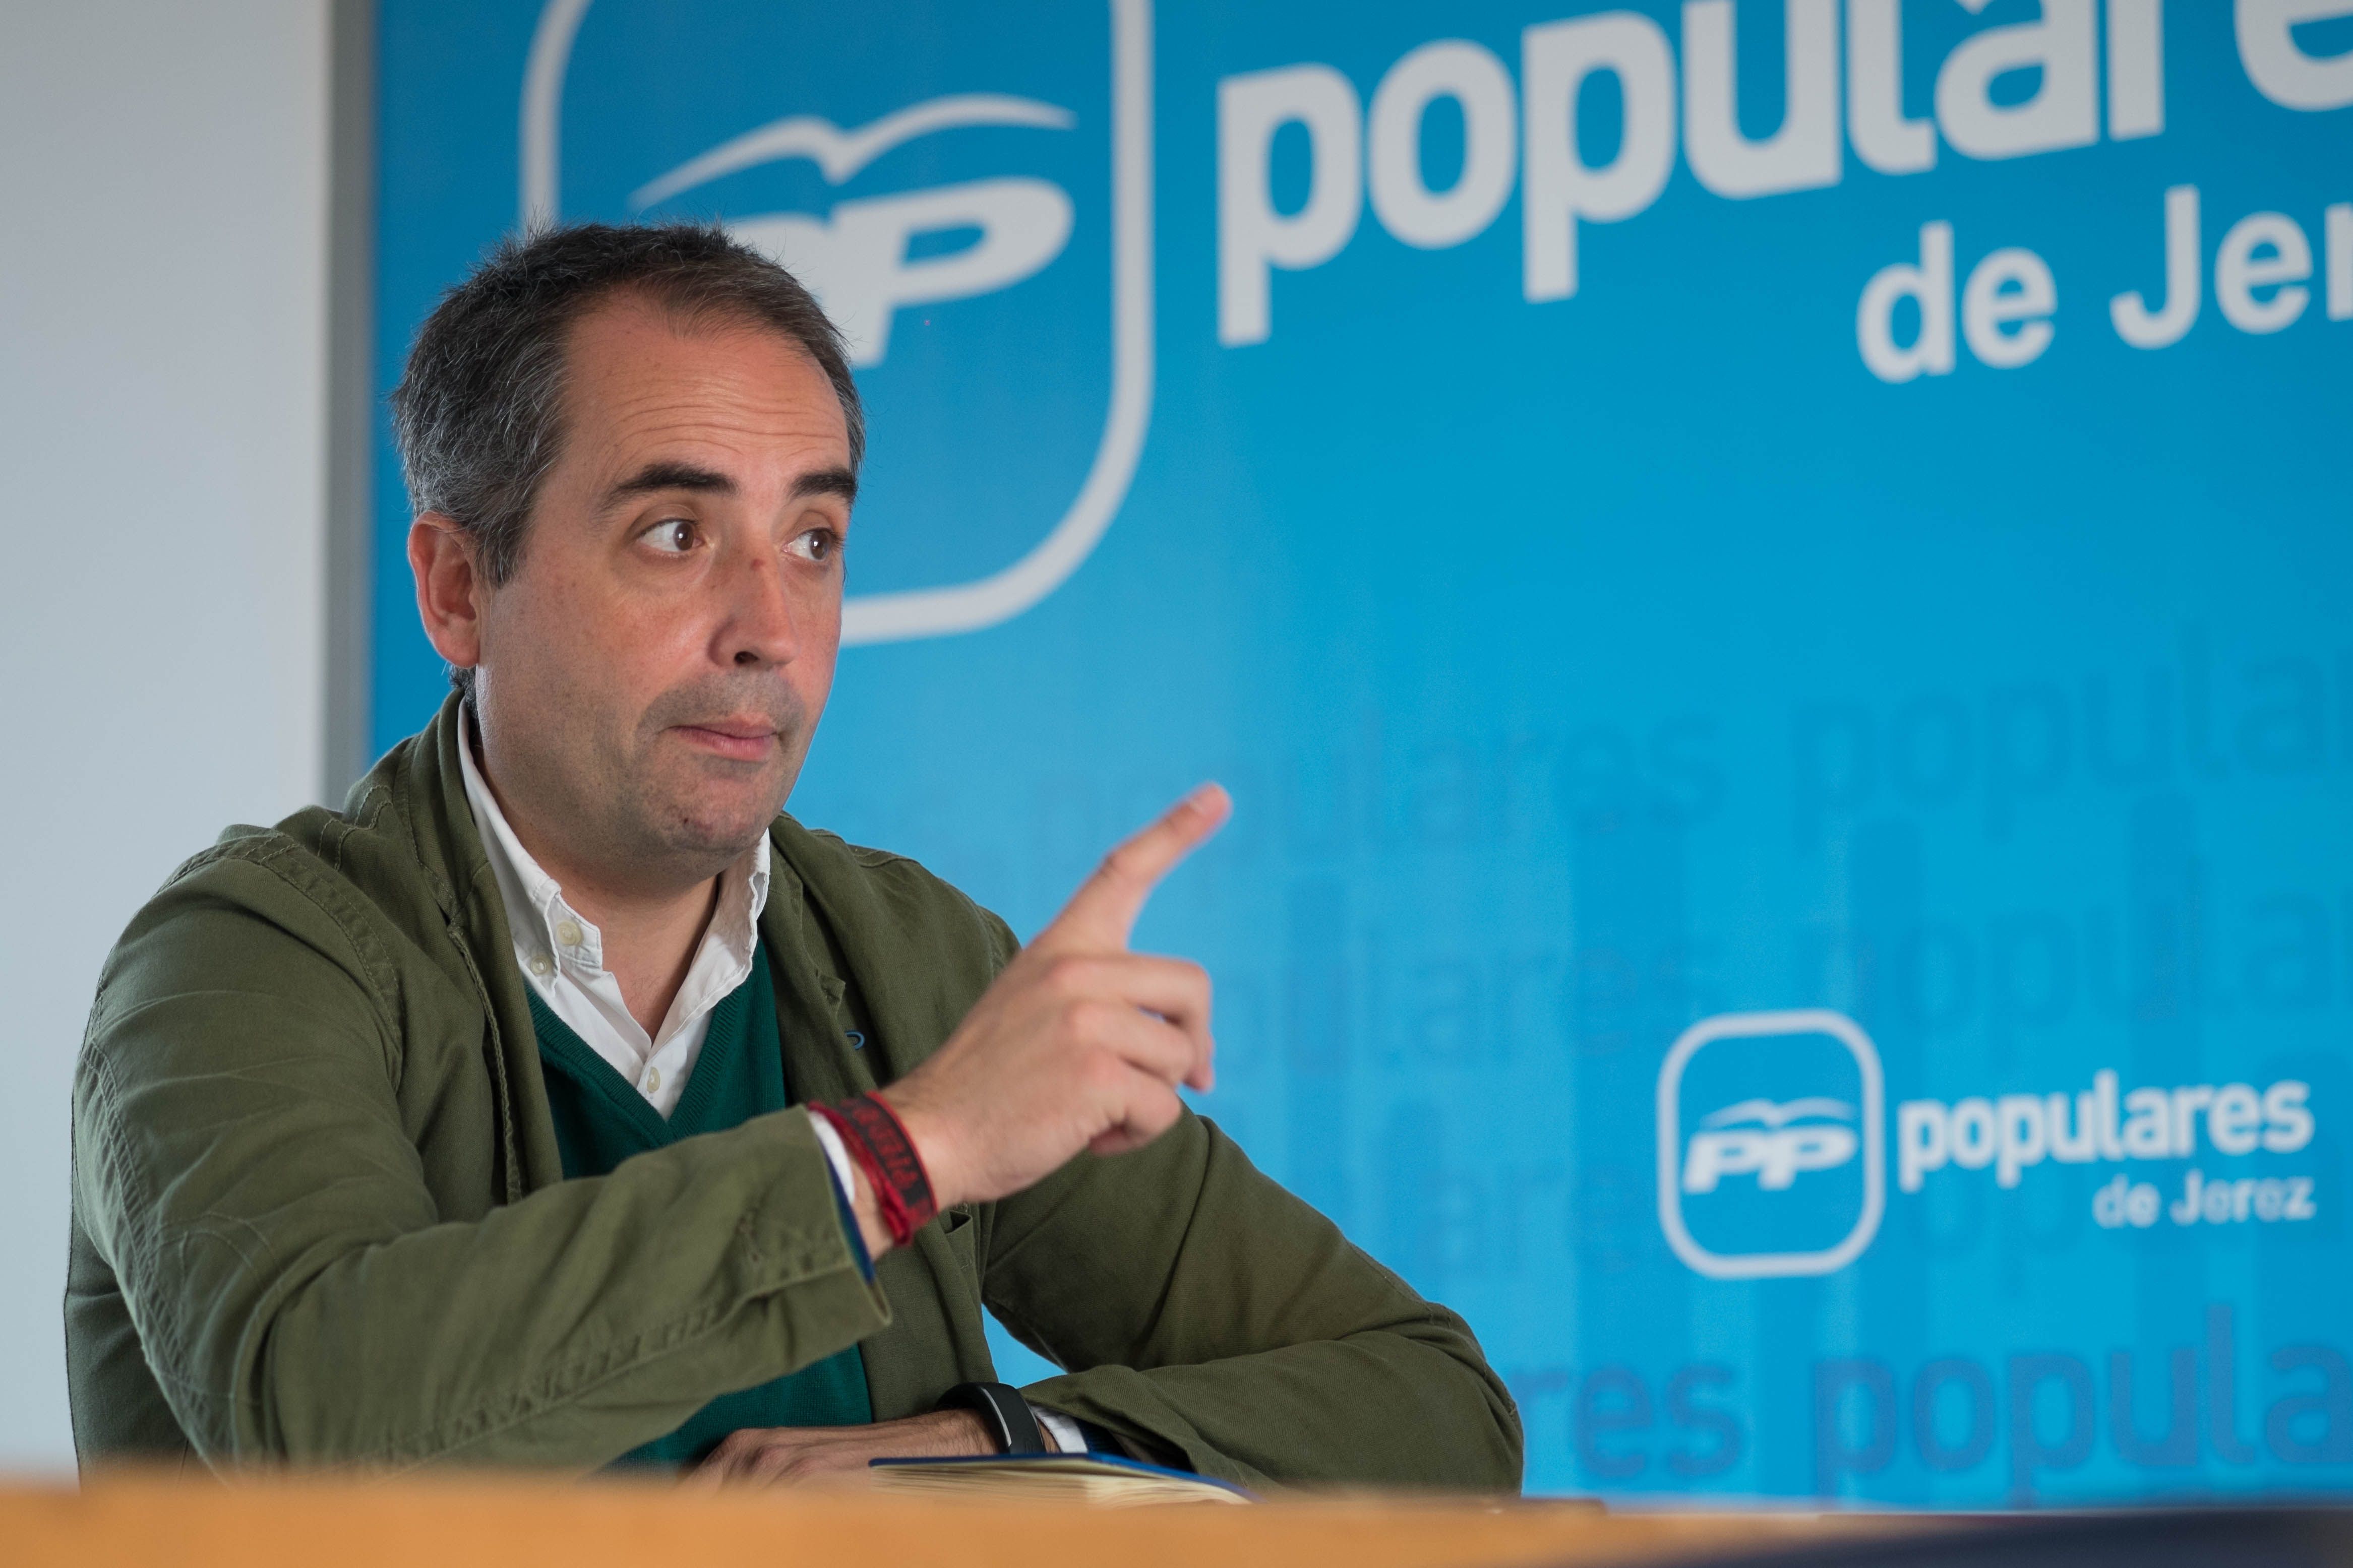 Antonio Saldaña, candidato a la Alcaldía de Jerez por el Partido Popular. FOTO: MANU GARCÍA.